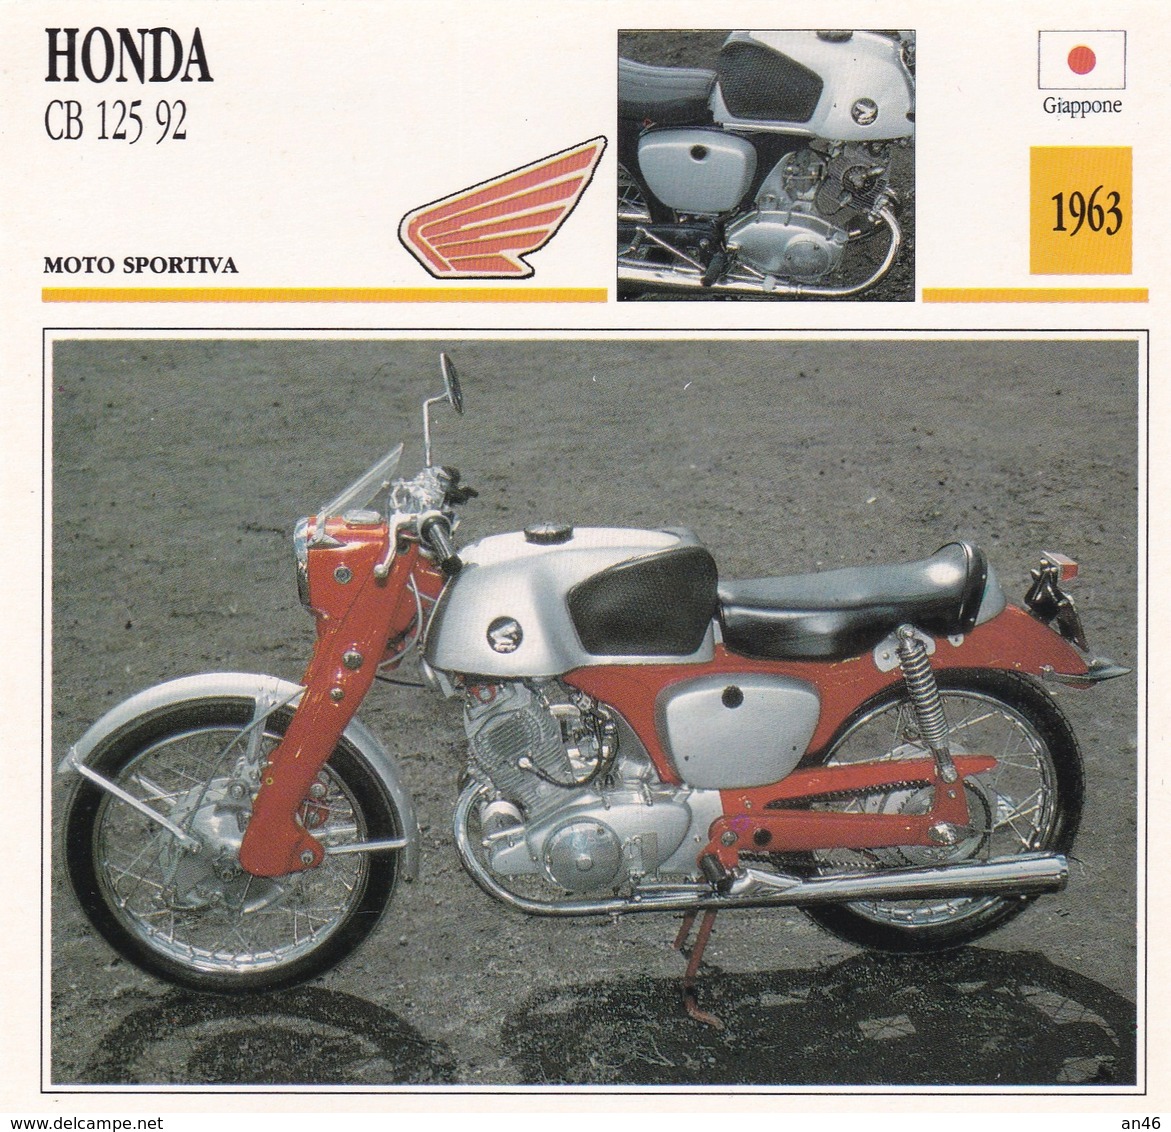 MOTO SPORTIVA HONDA CB 125 92 GIAPPONE 1963 DESCRIZIONE COMPLETA SUL RETRO AUTENTICA 100% - Advertising